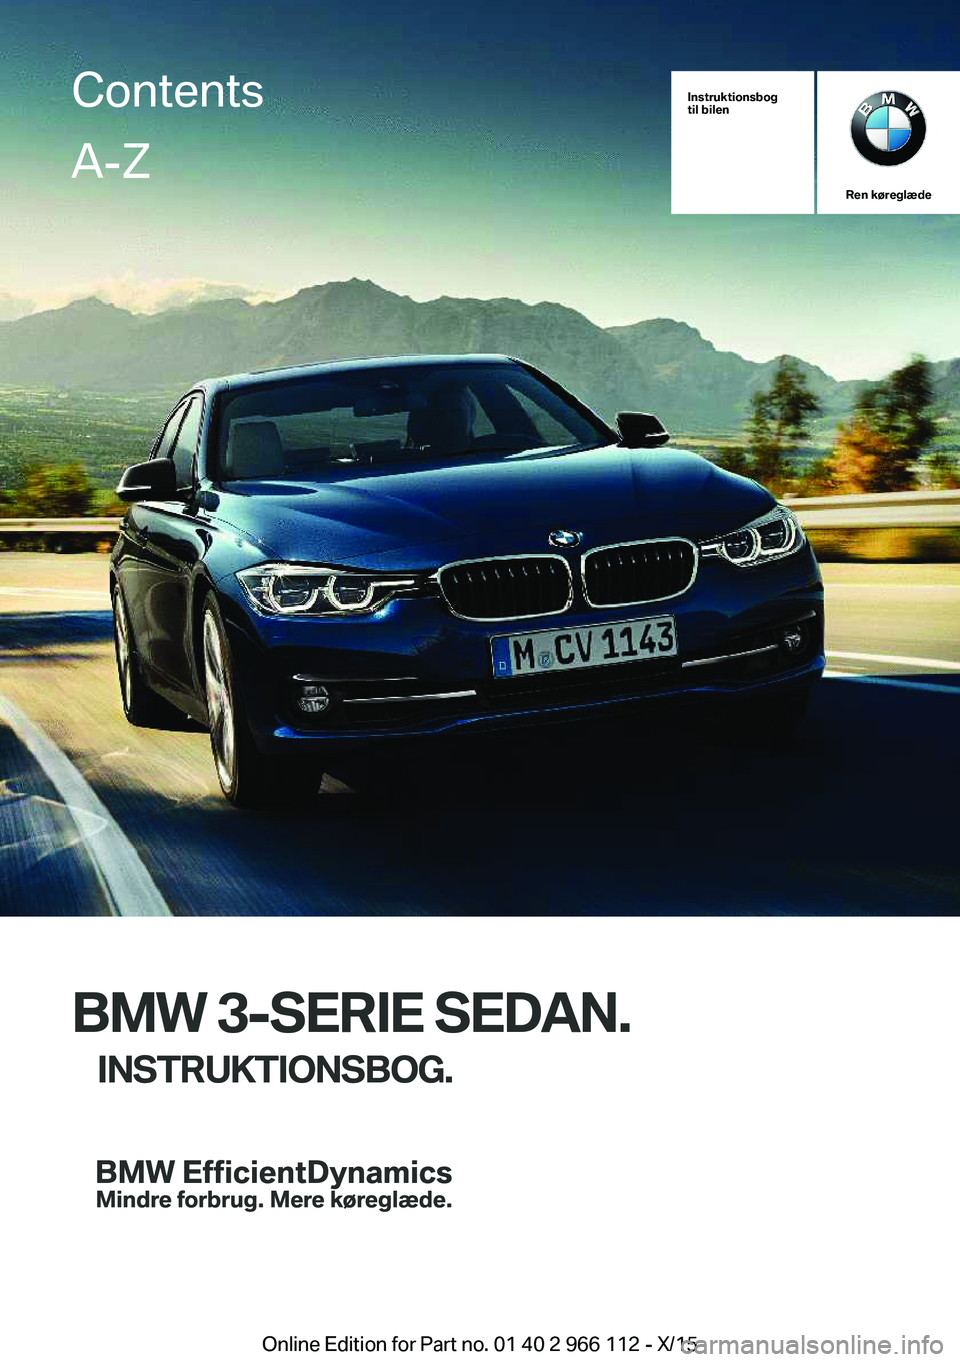 BMW 3 SERIES 2016  InstruktionsbØger (in Danish) Instruktionsbog
til bilen
Ren køreglæde
BMW 3-SERIE SEDAN.
INSTRUKTIONSBOG.
ContentsA-Z
Online Edition for Part no. 01 40 2 966 112 - X/15   